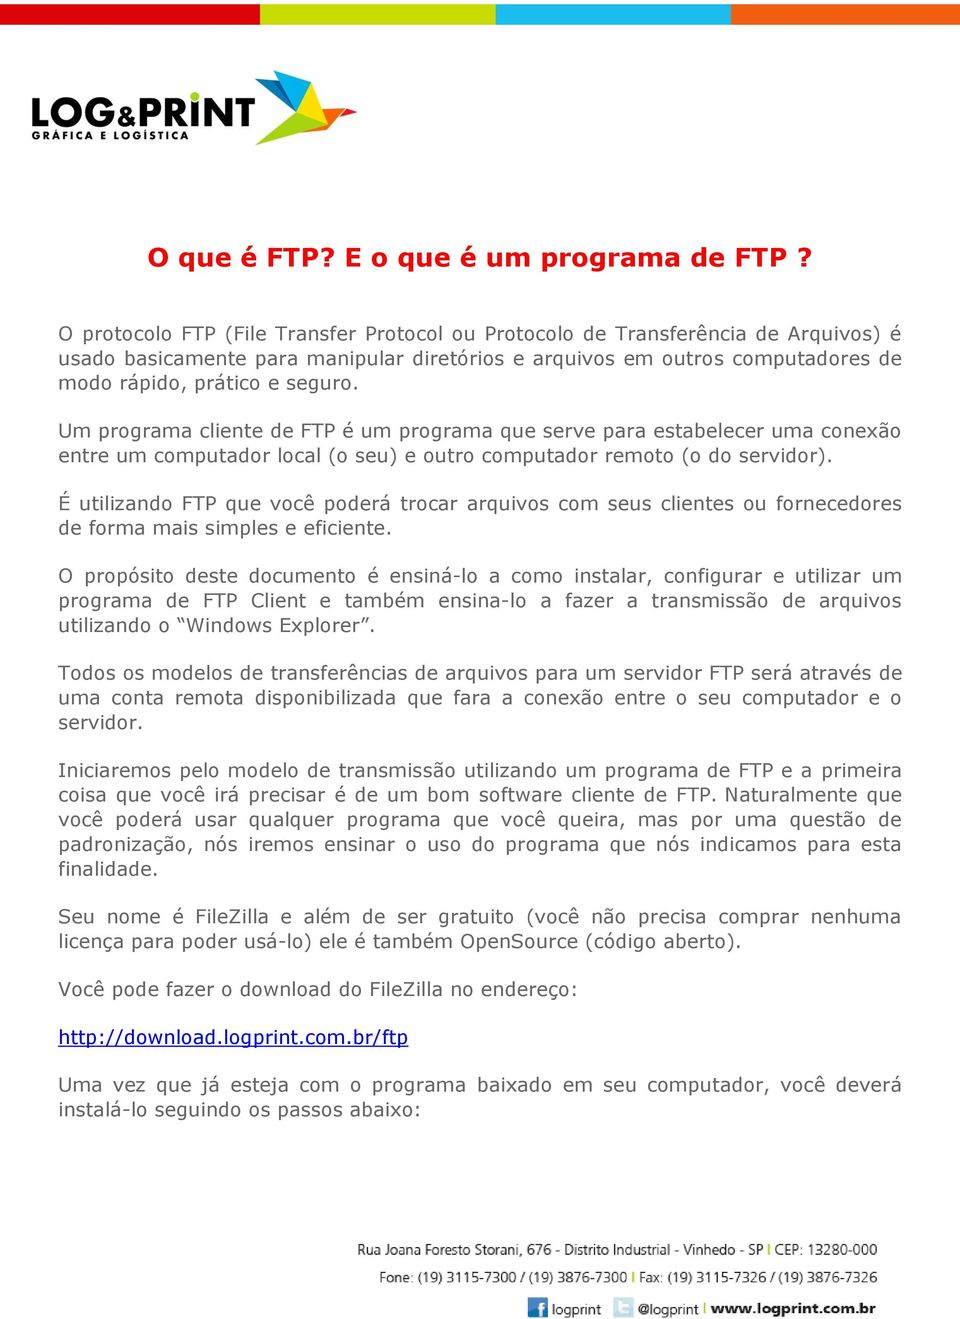 Um programa cliente de FTP é um programa que serve para estabelecer uma conexão entre um computador local (o seu) e outro computador remoto (o do servidor).